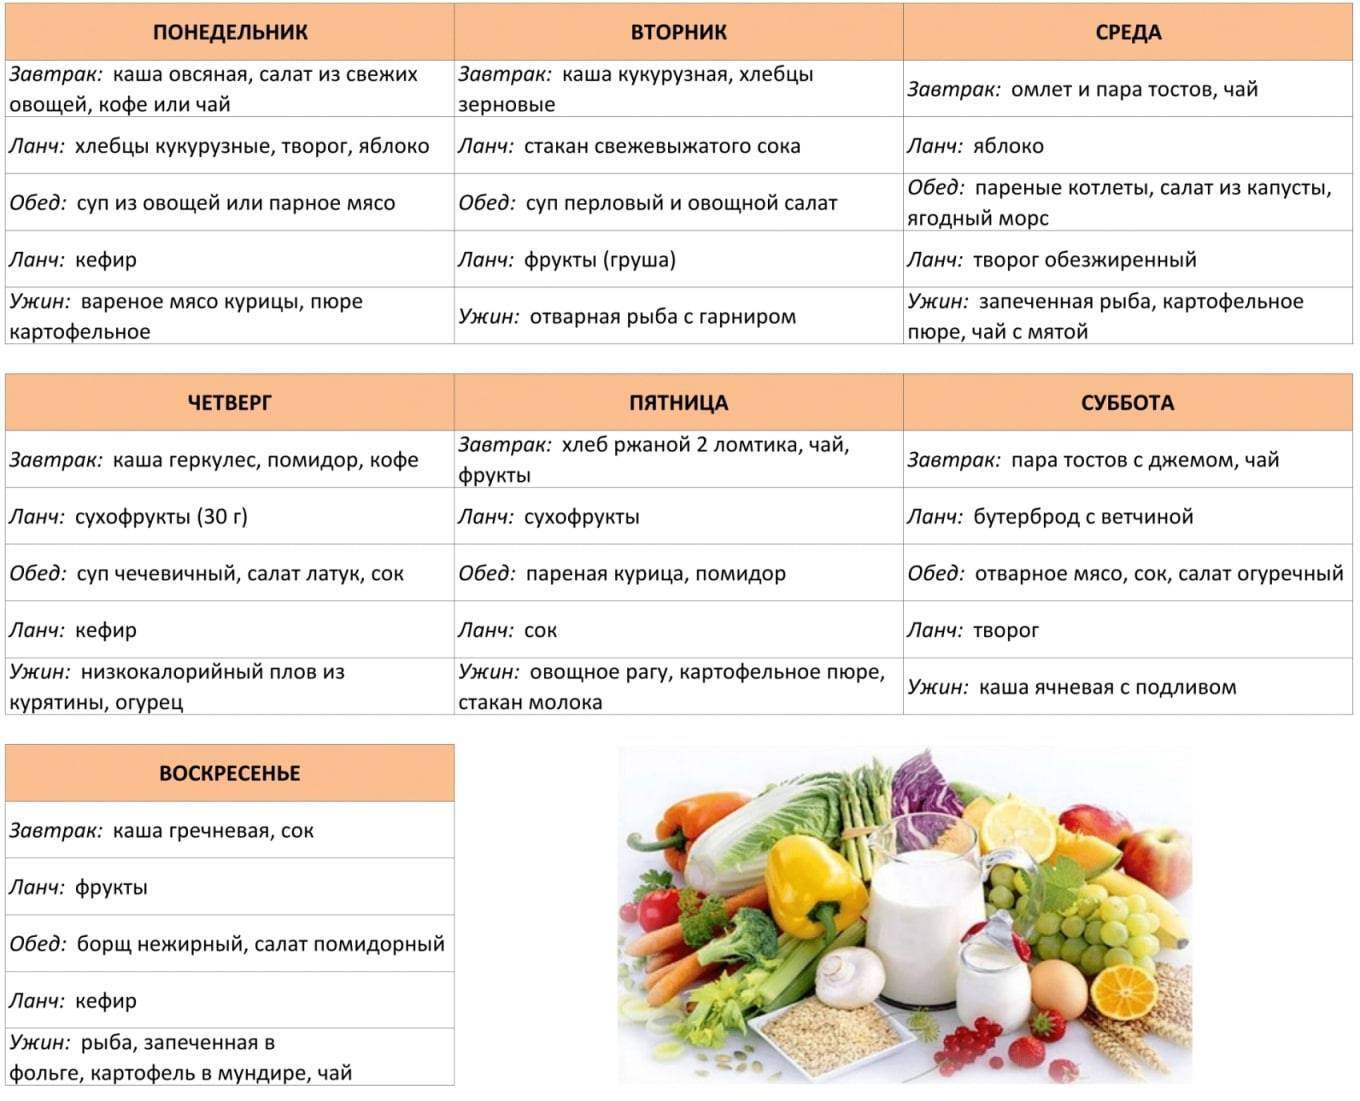 Примерное меню на 7 дней для белковой диеты